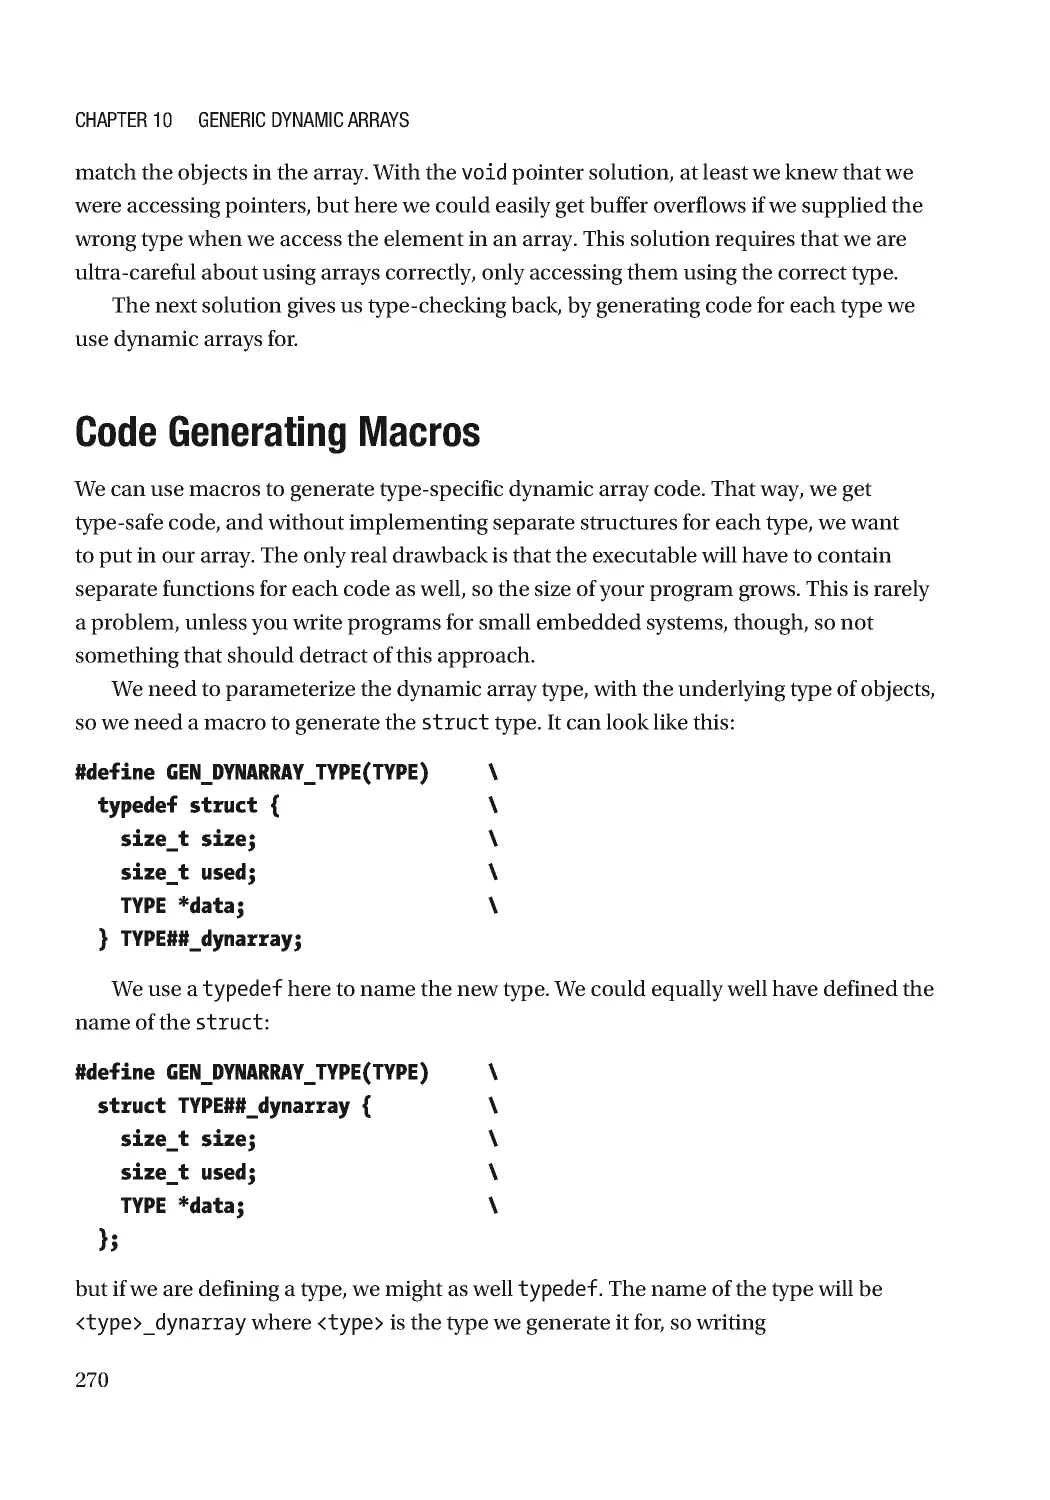 Code Generating Macros